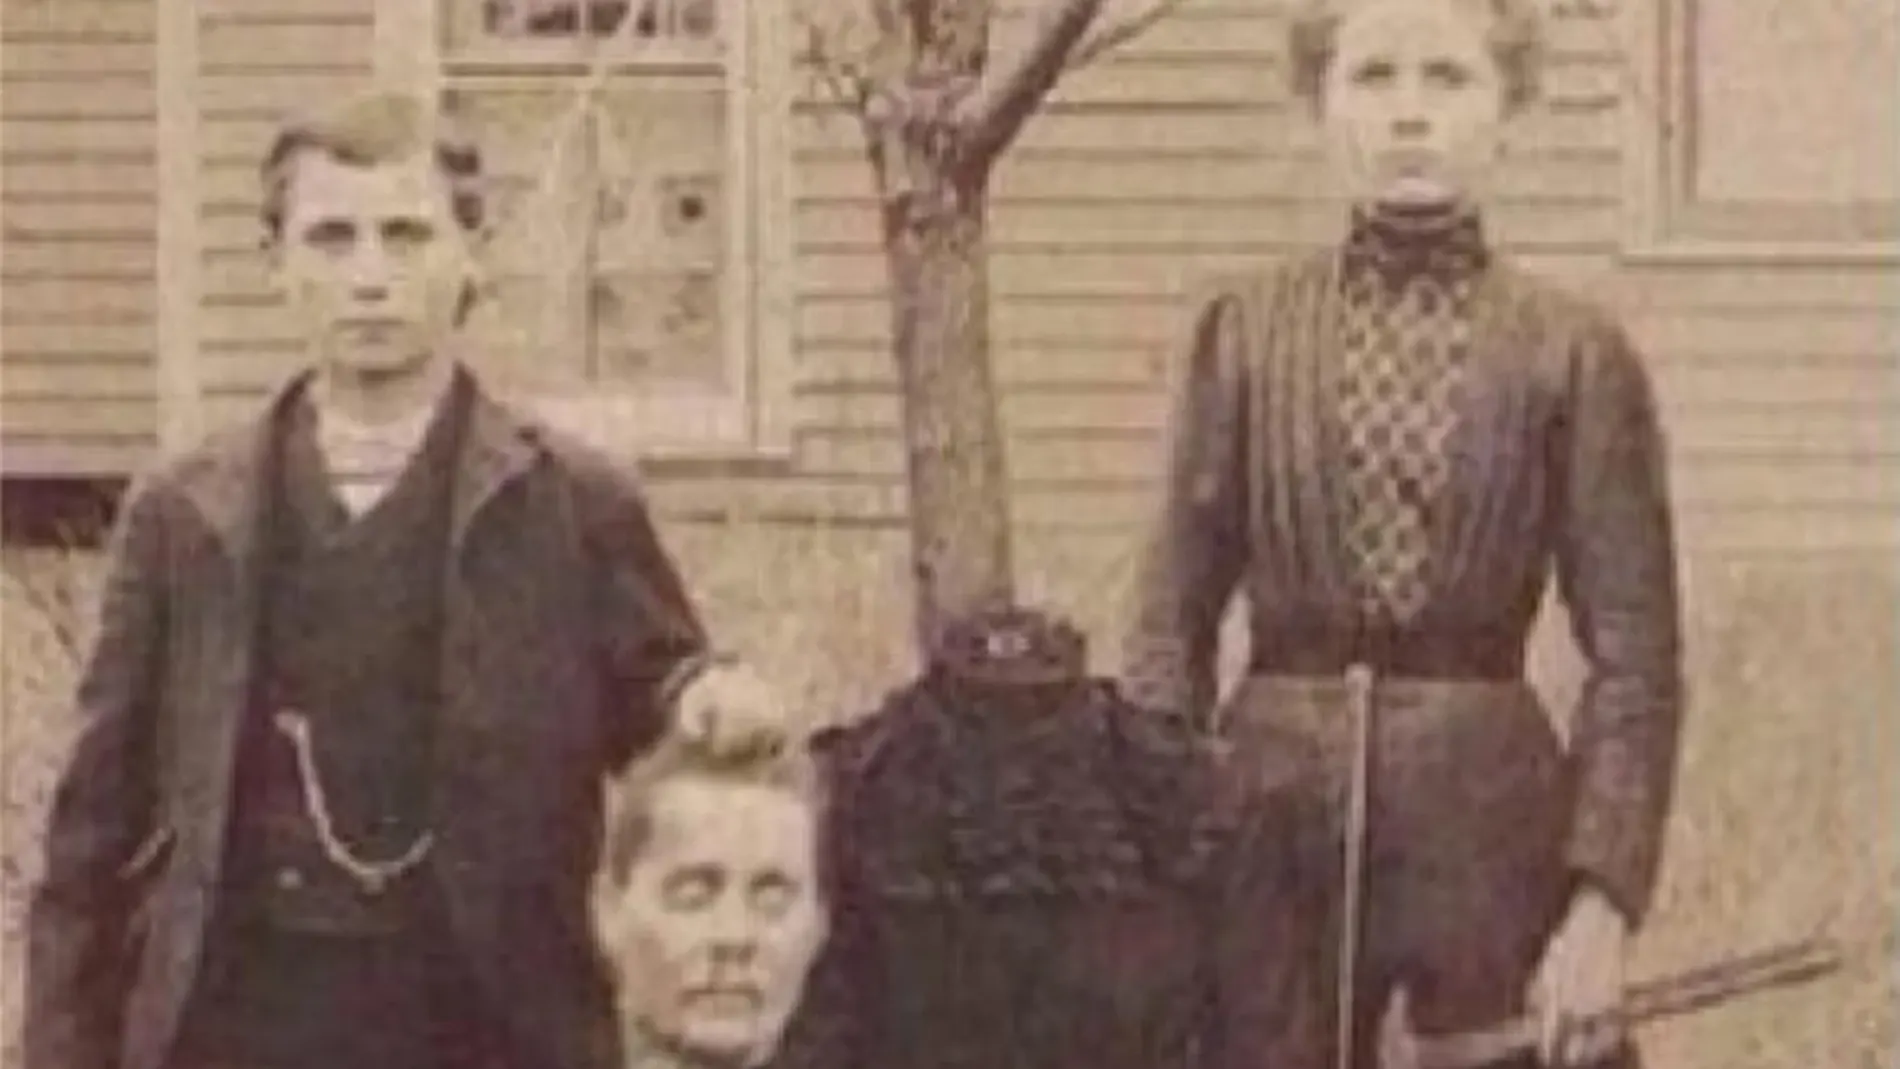 Imagen retocada de la familia Buckley, protagonistas de una de las leyendas más populares de Halloween